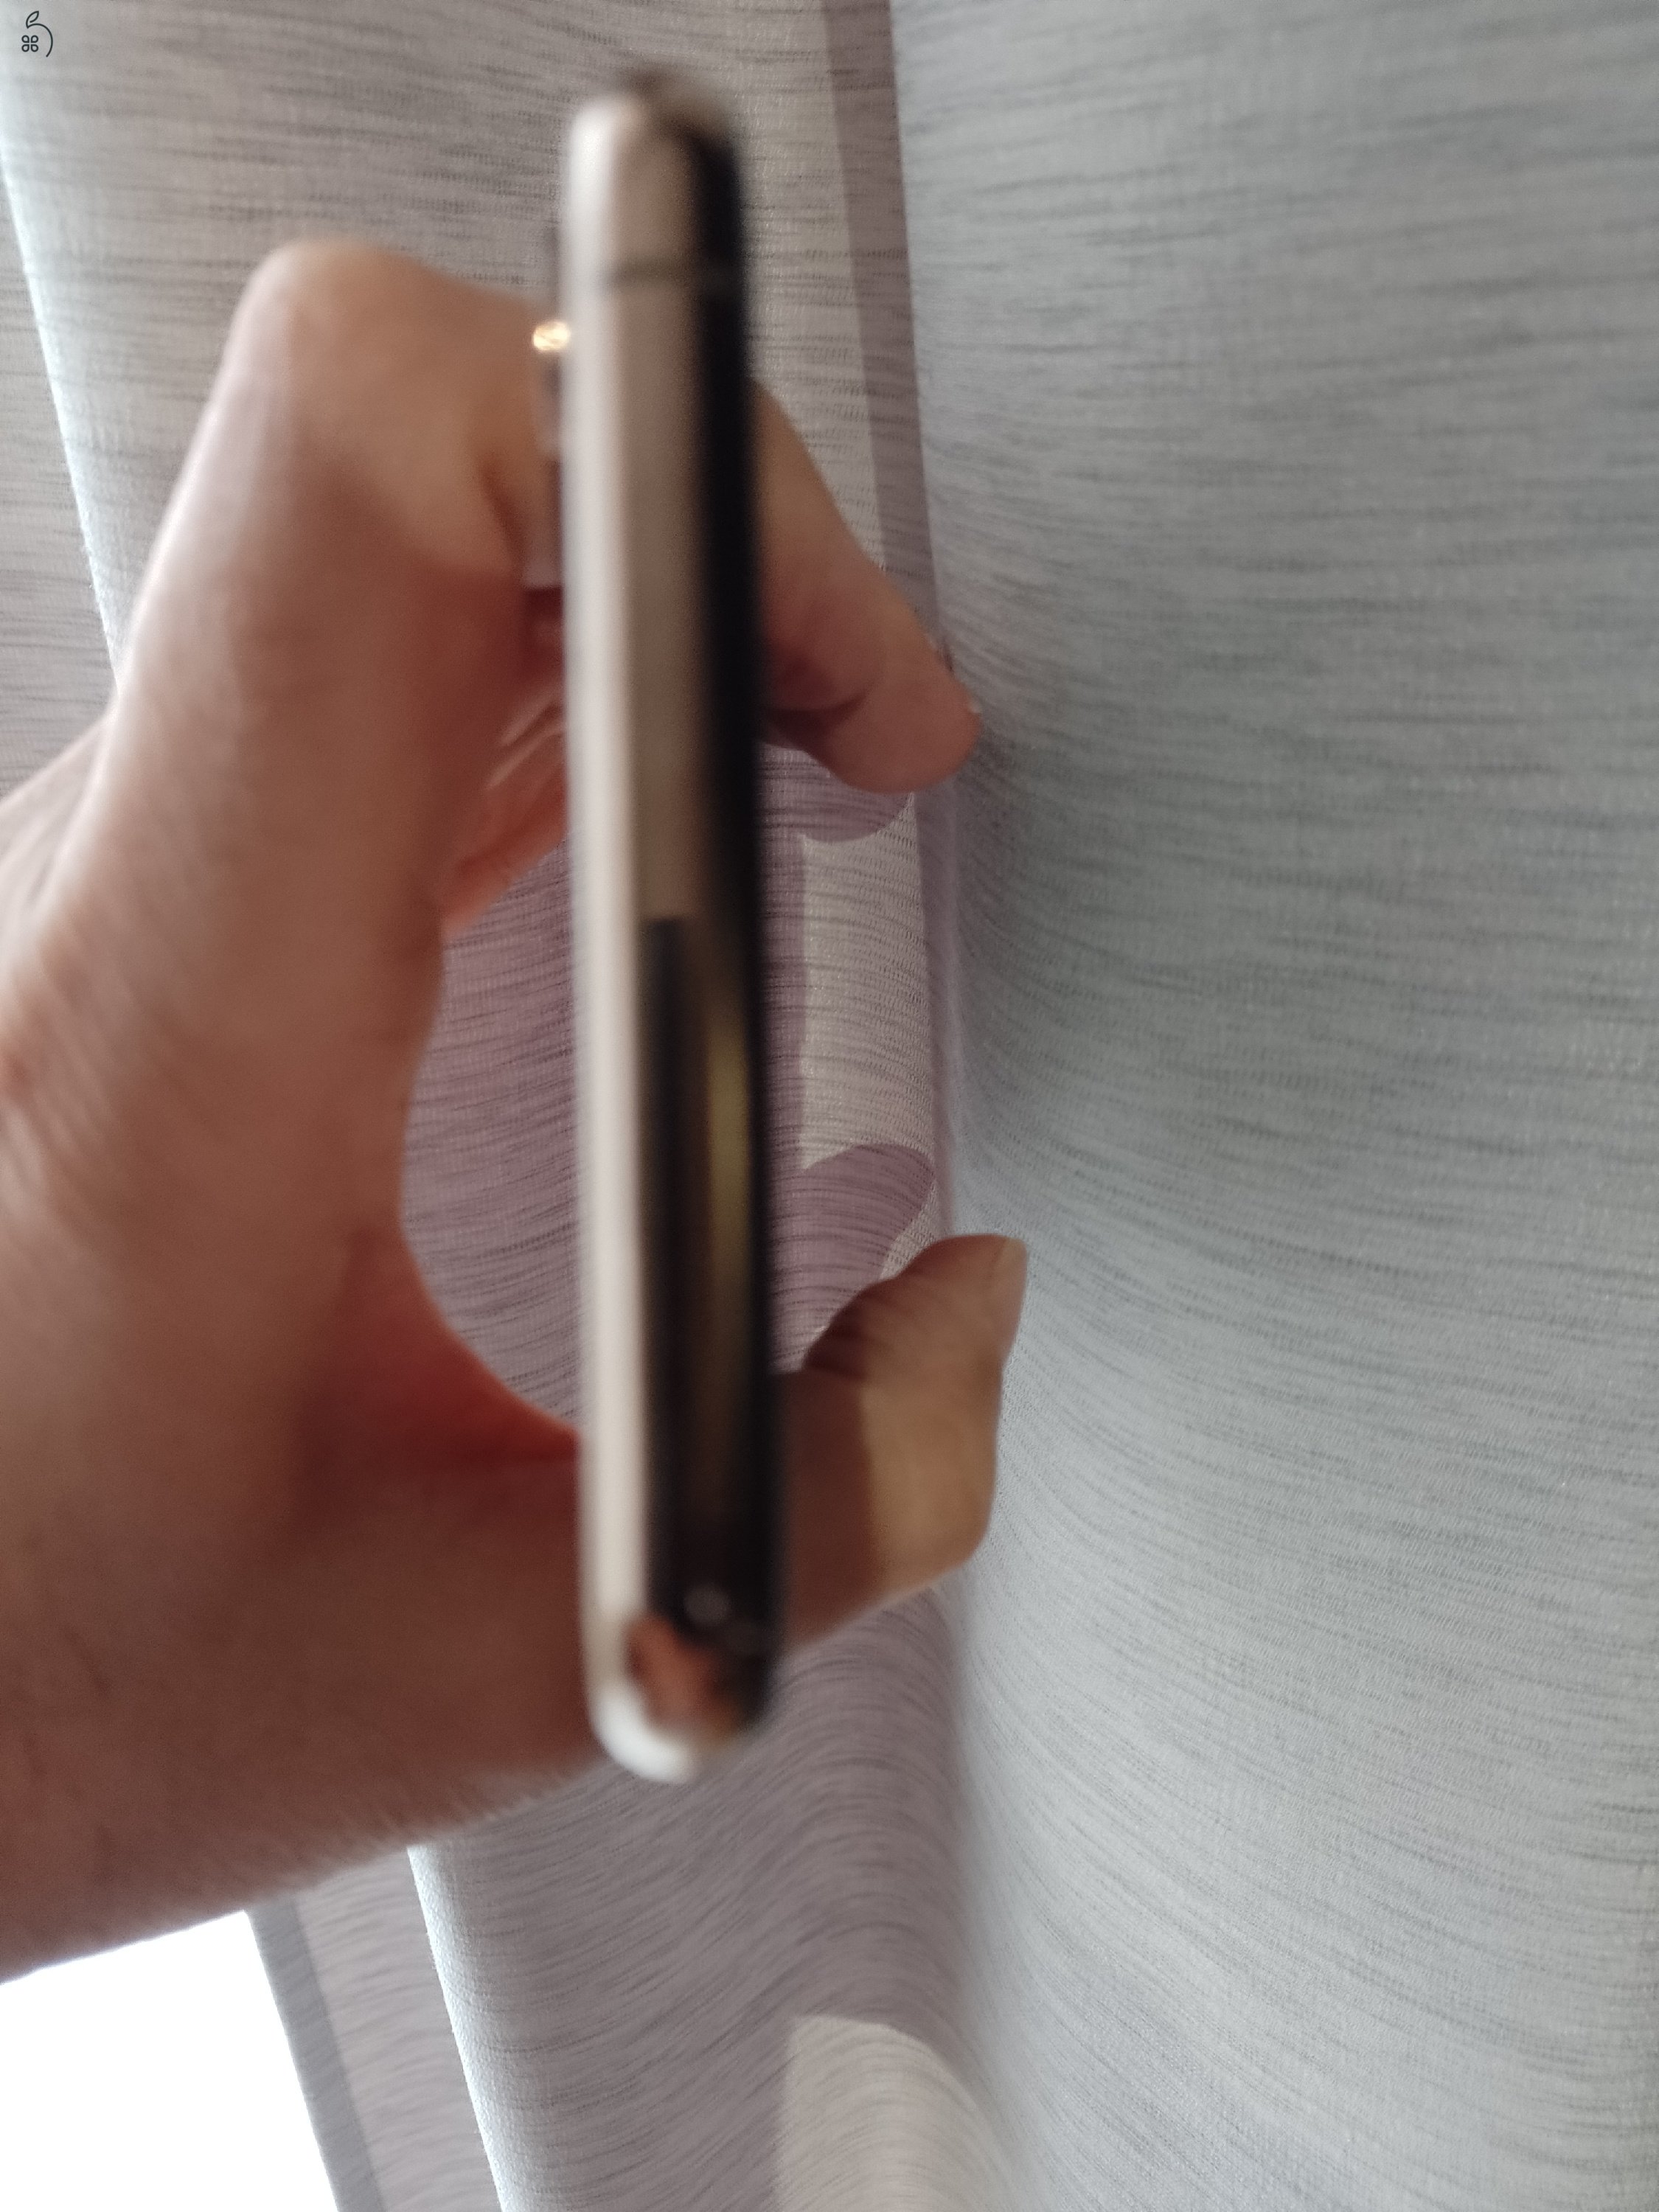  iPhone Xs Max 64 GB arany, sérülés és karcmentes, gyári független, boltban vásárolt